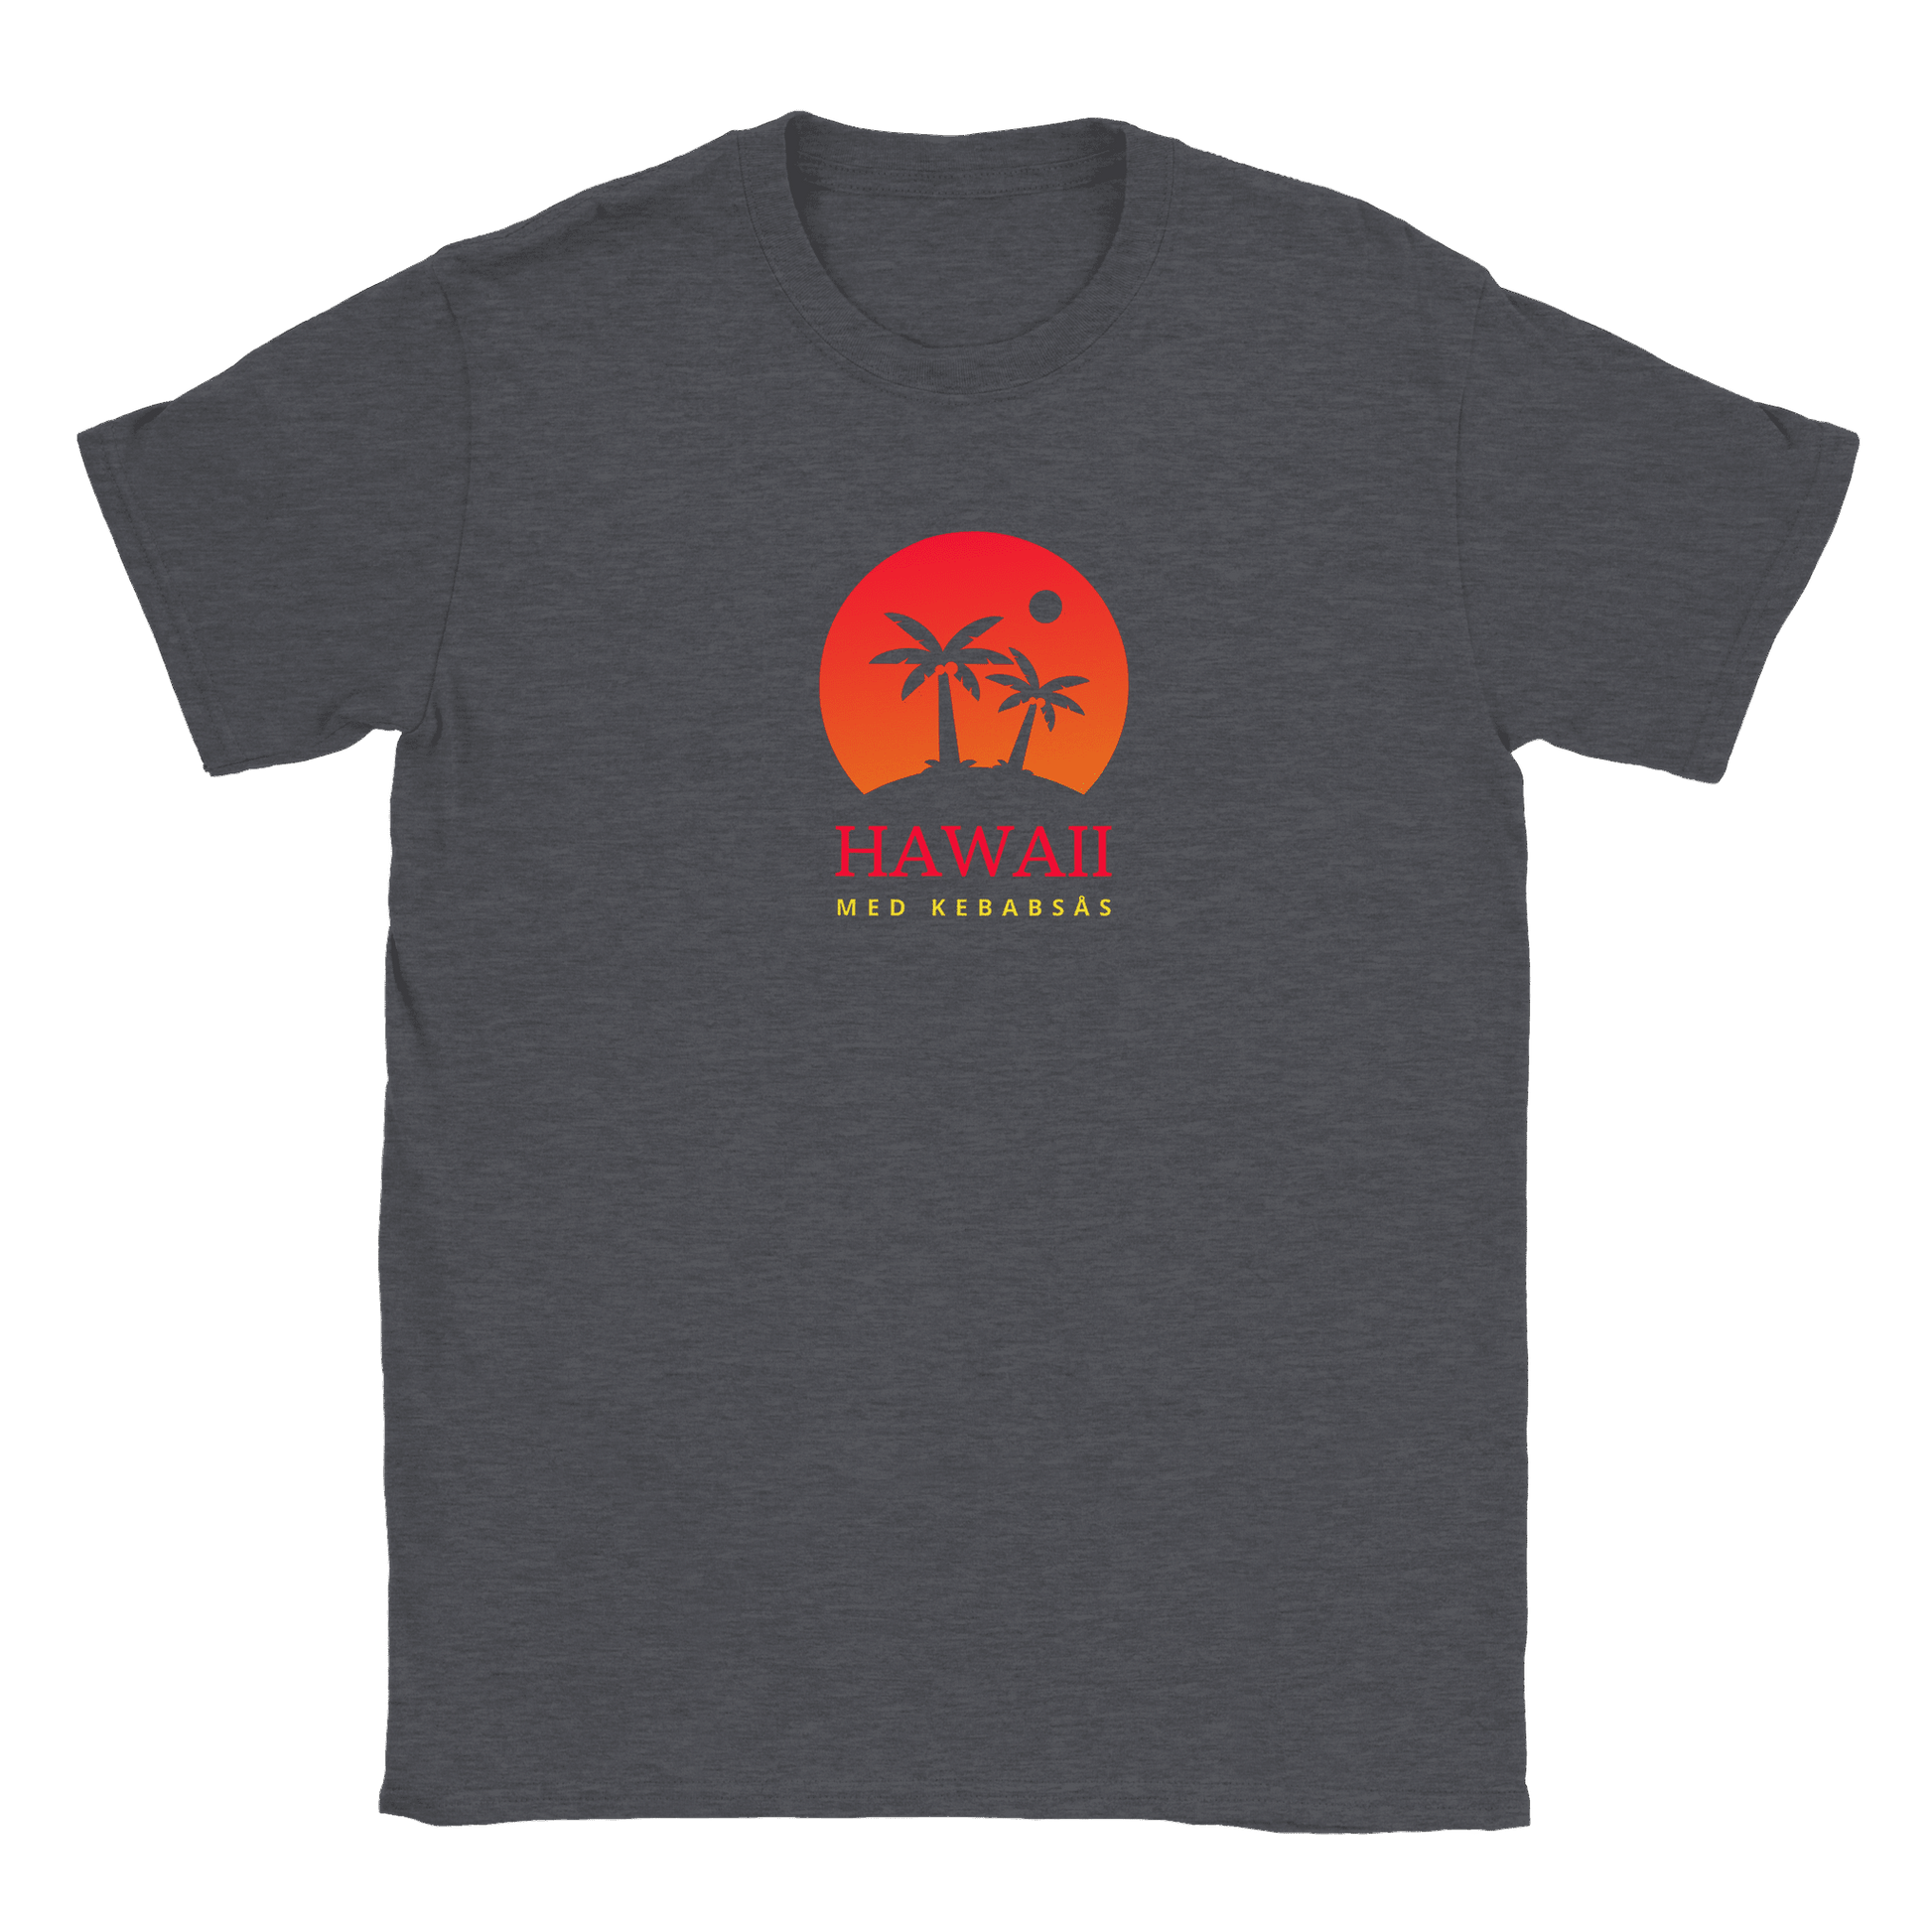 Hawaii med kebabsås - T-shirt Mörk Ljung